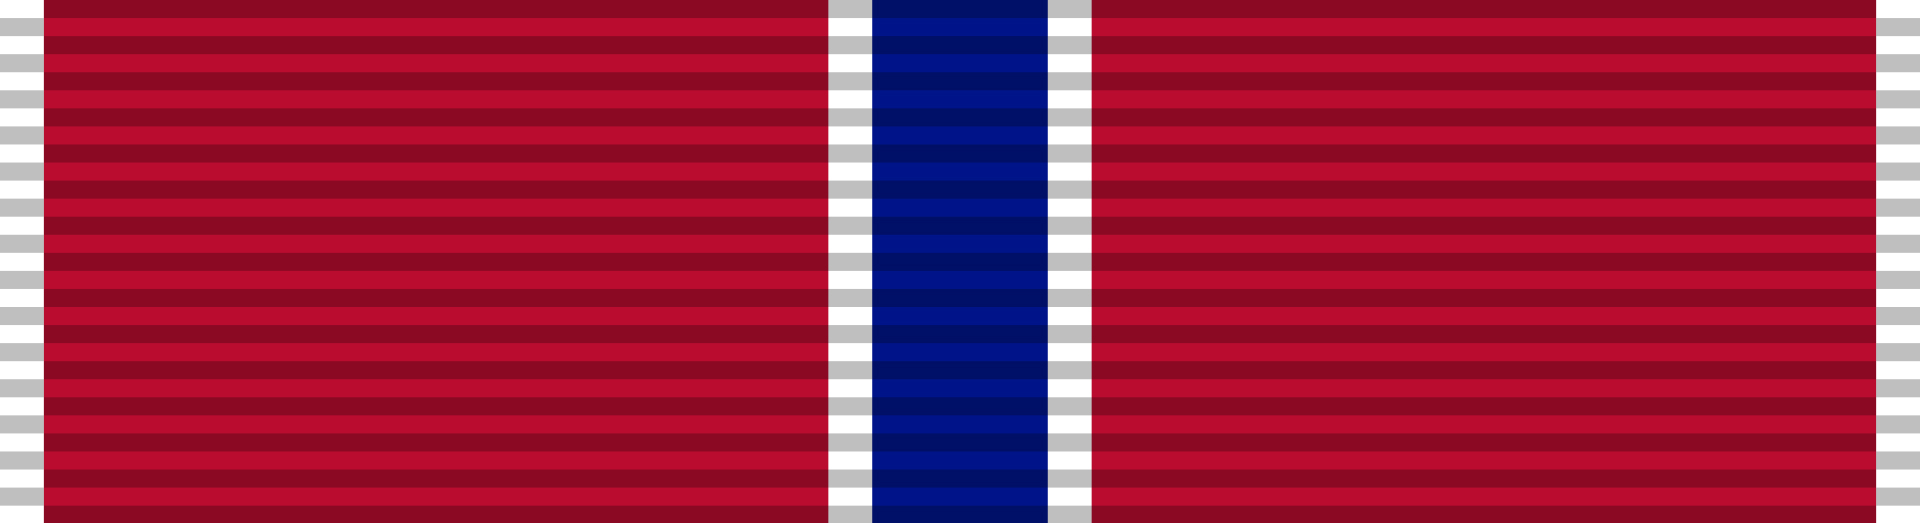 Bronze Star Medal with Oak Leaf Cluster